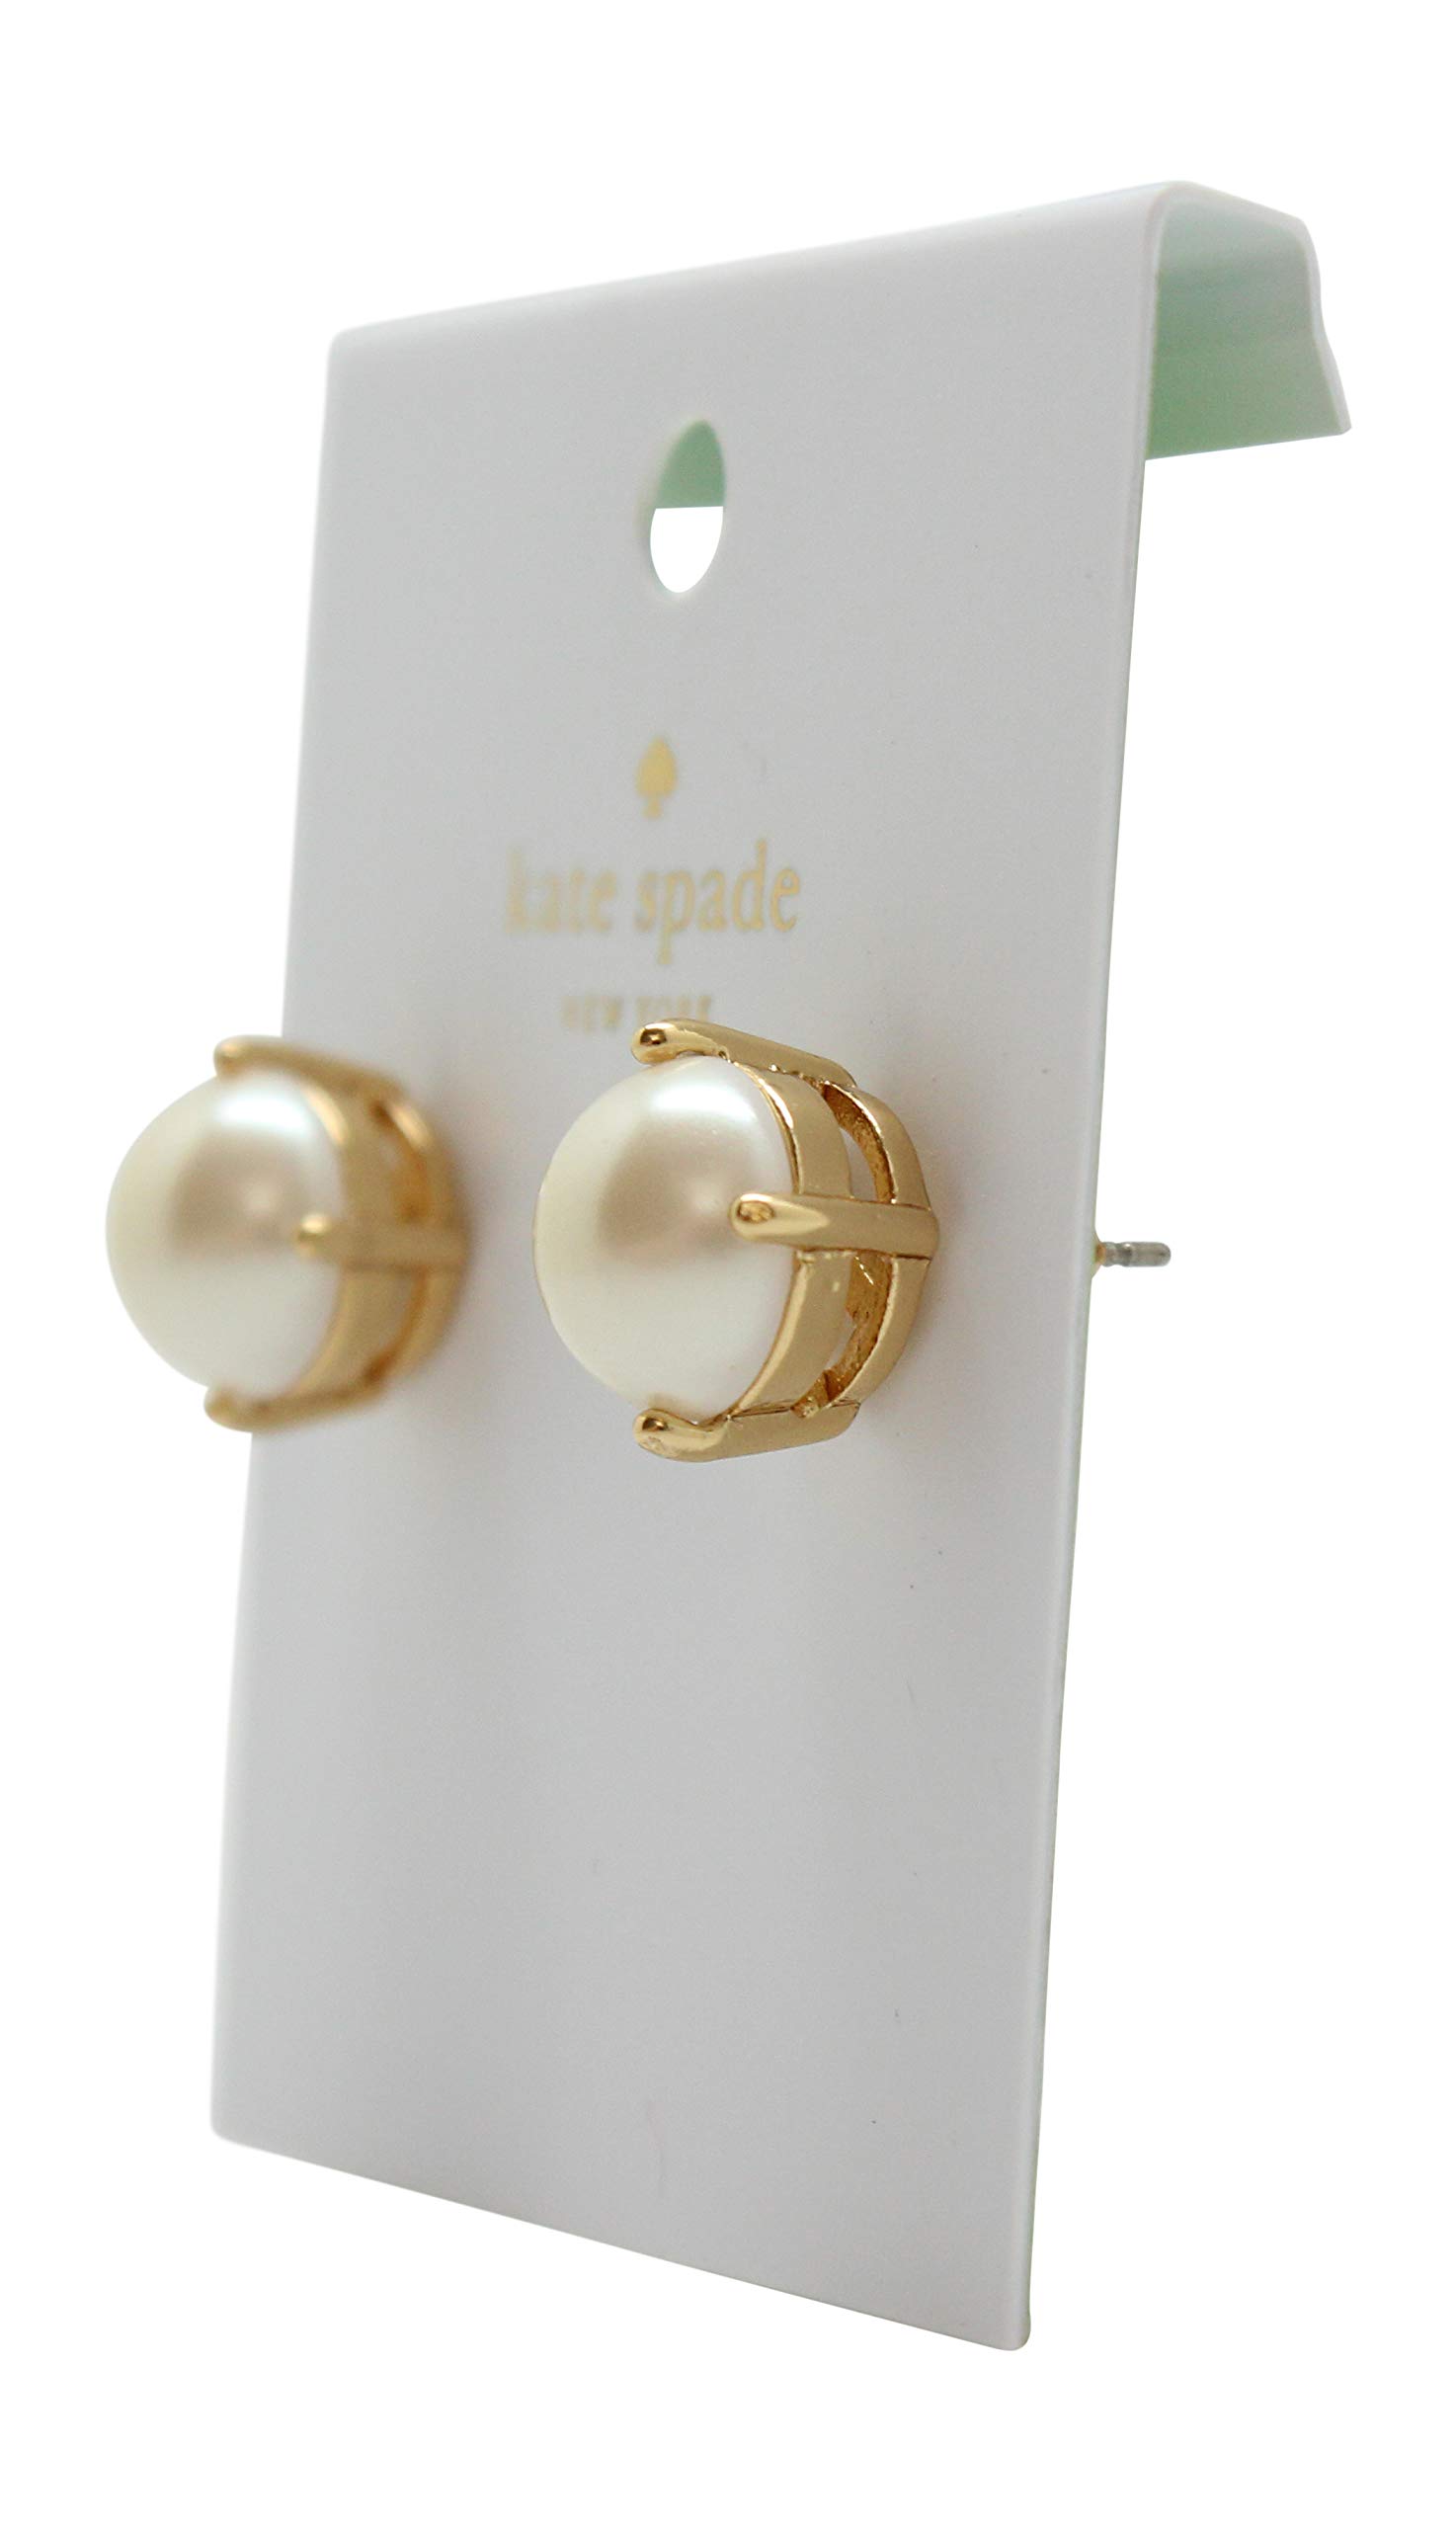 Kate Spade New York Pearl Gumdrop Stud Earrings (Cream)